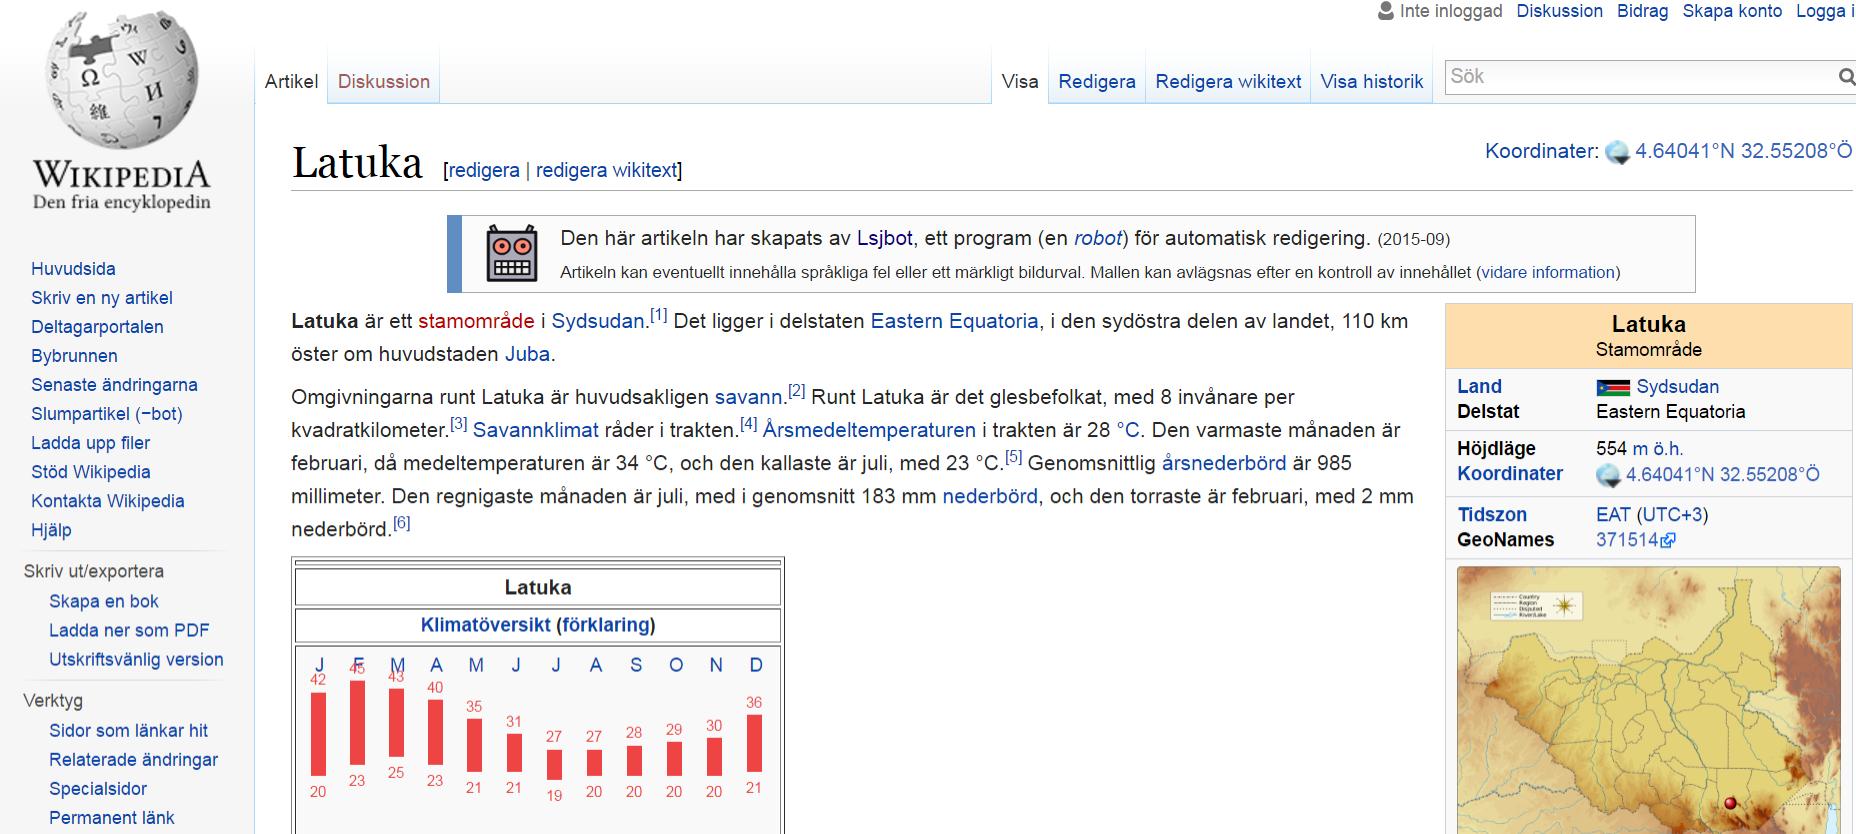 Lsjbot: 10 % Wikipediasta Sverker Johansson on kirjoittanut Lsjbot ohjelmallaan Yli puolet Ruotsin